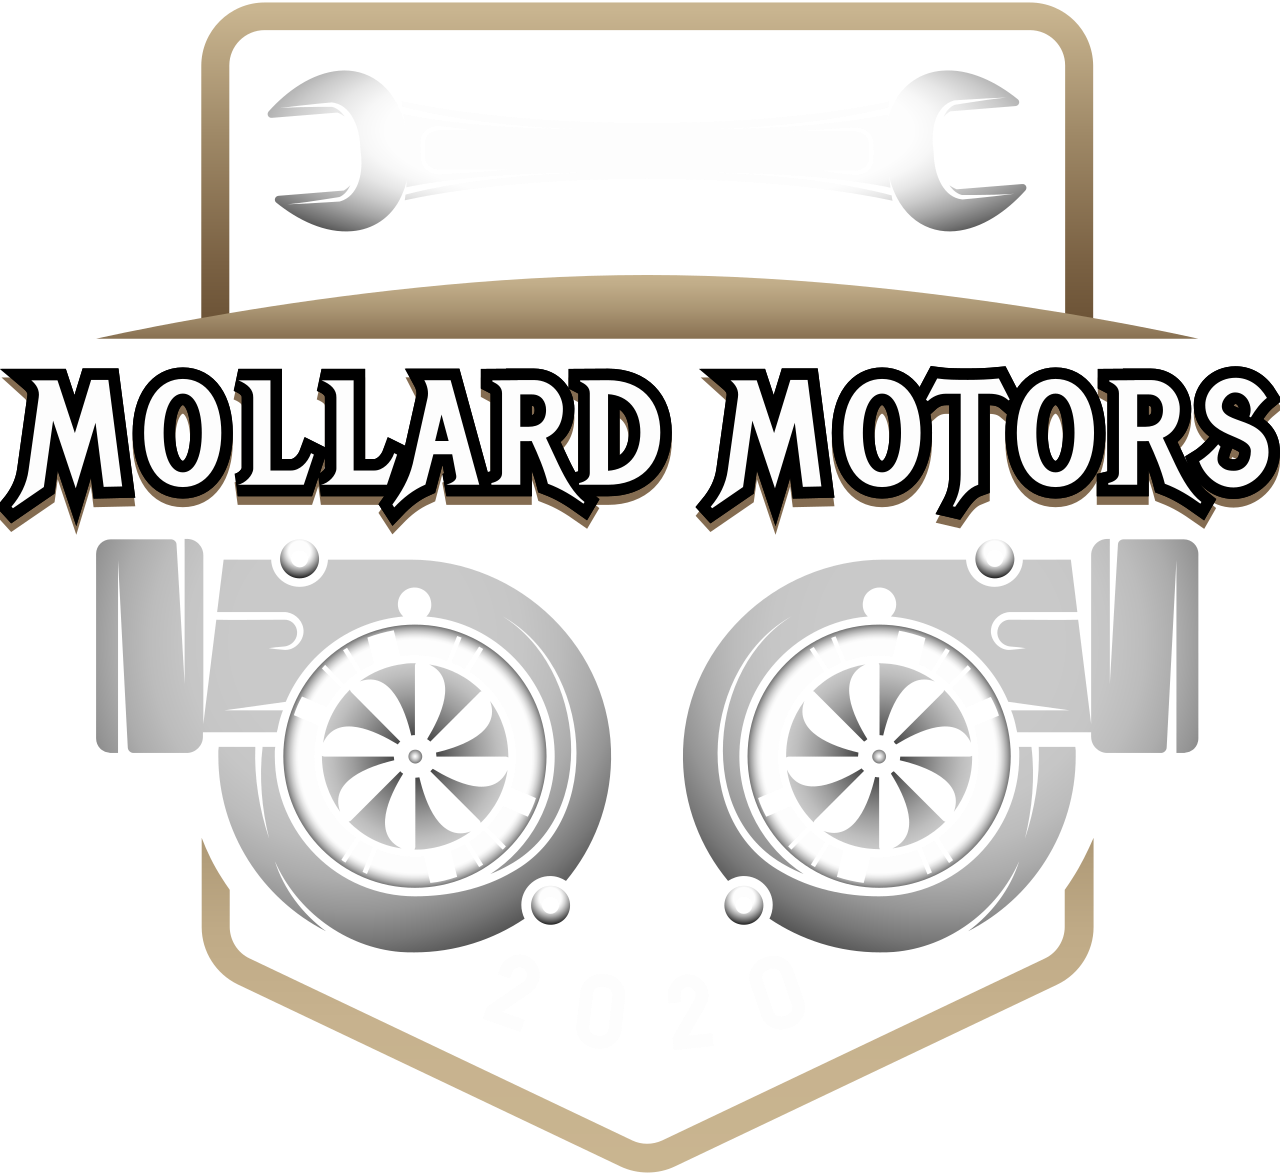 Mollard Motors's logo